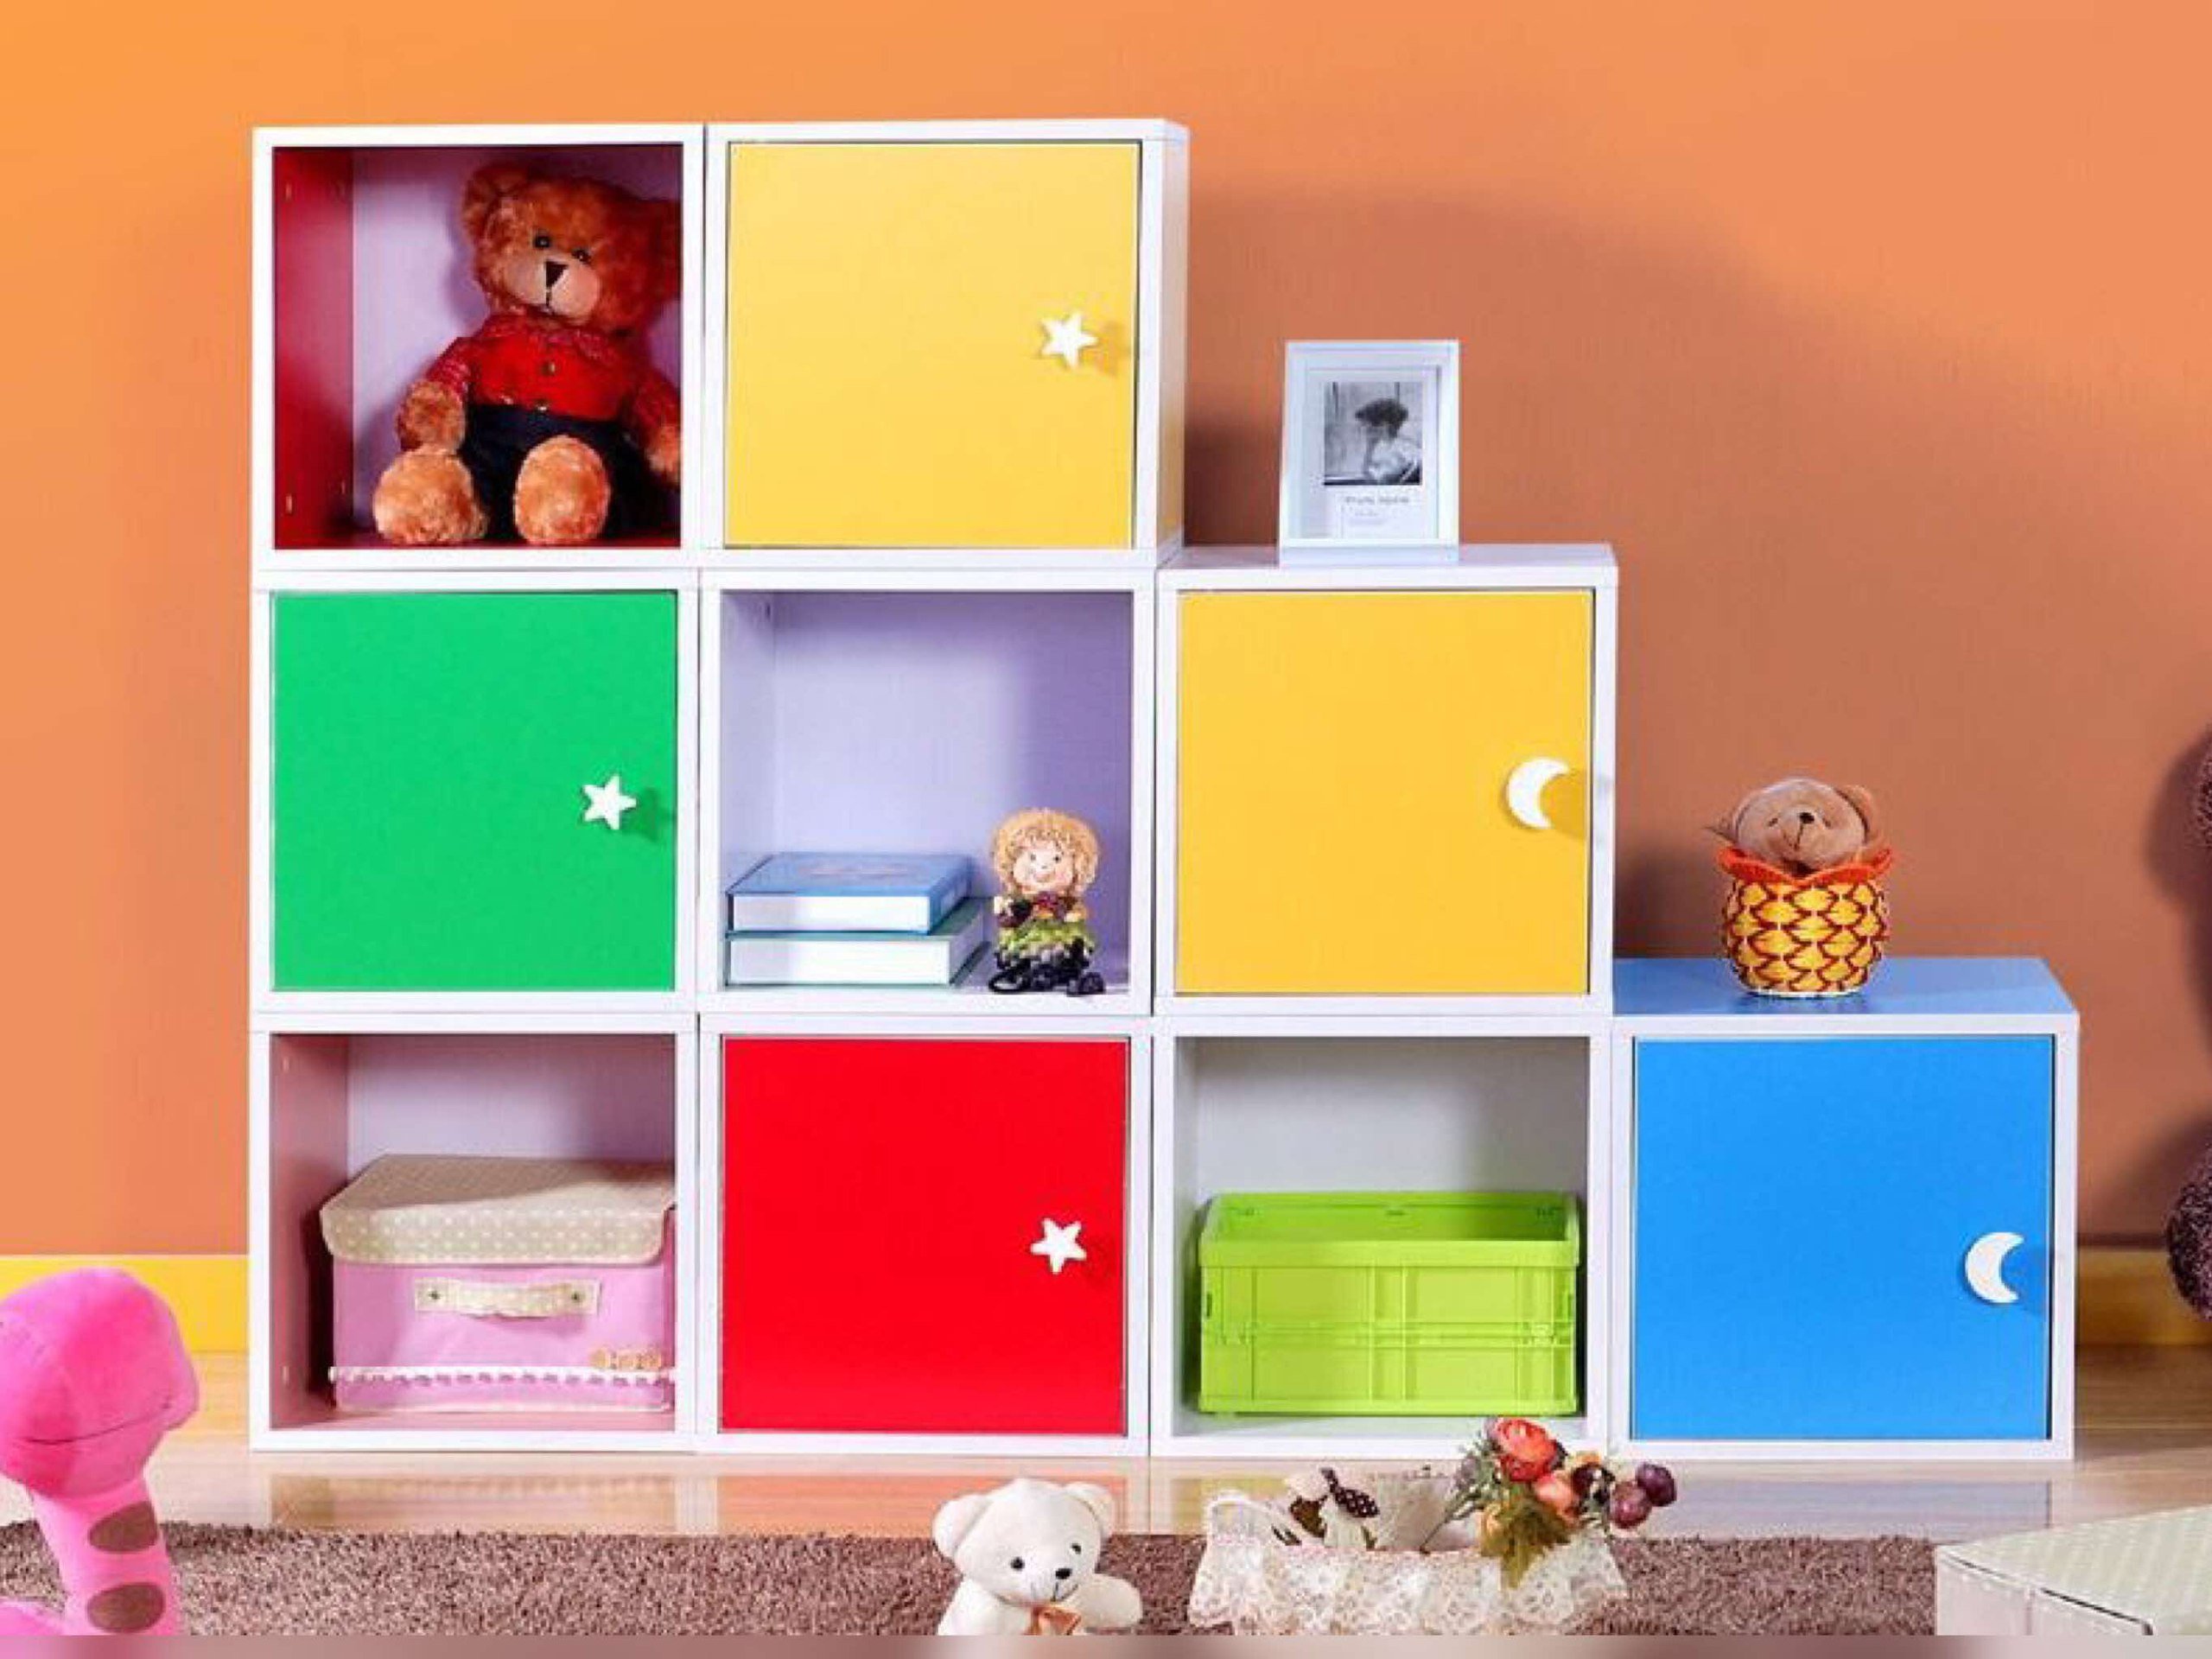 шкаф для книжек и игрушек в детскую